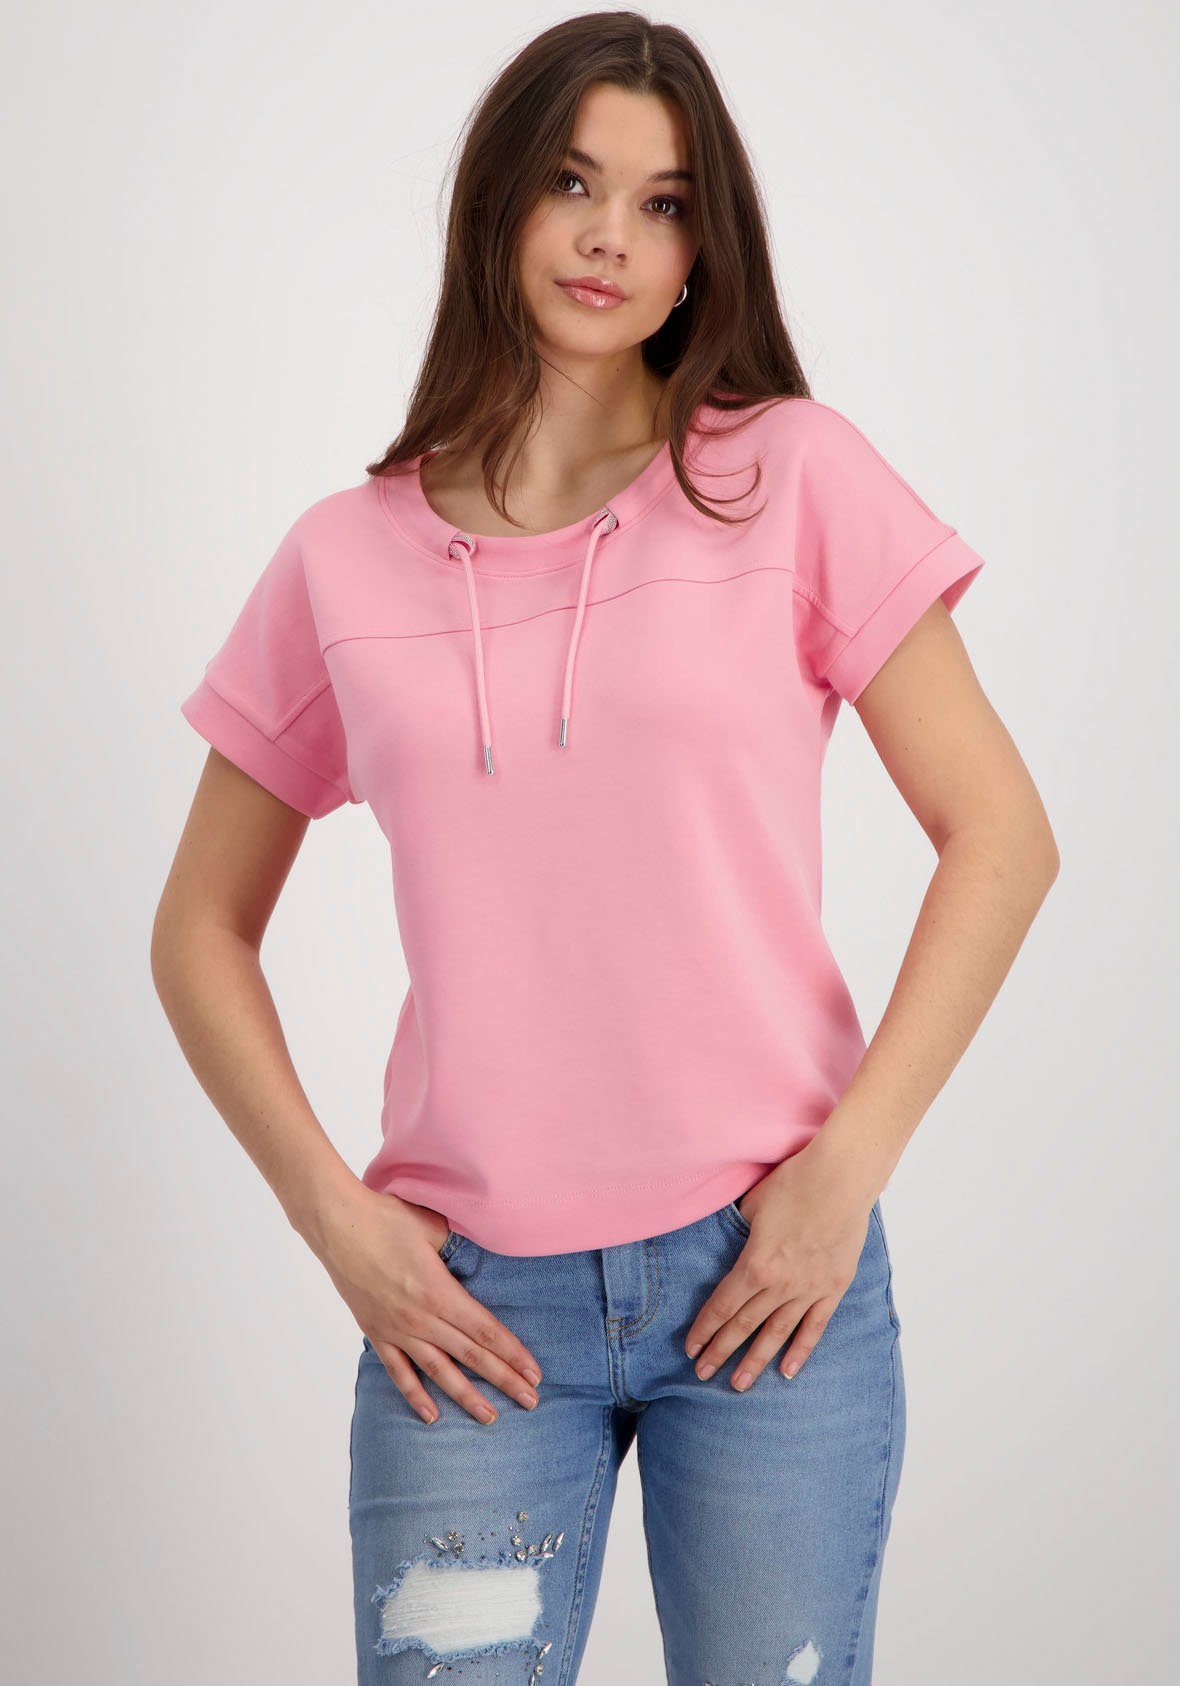 Monari shirt Basic sweatshirt 408348 258 Pink Dames